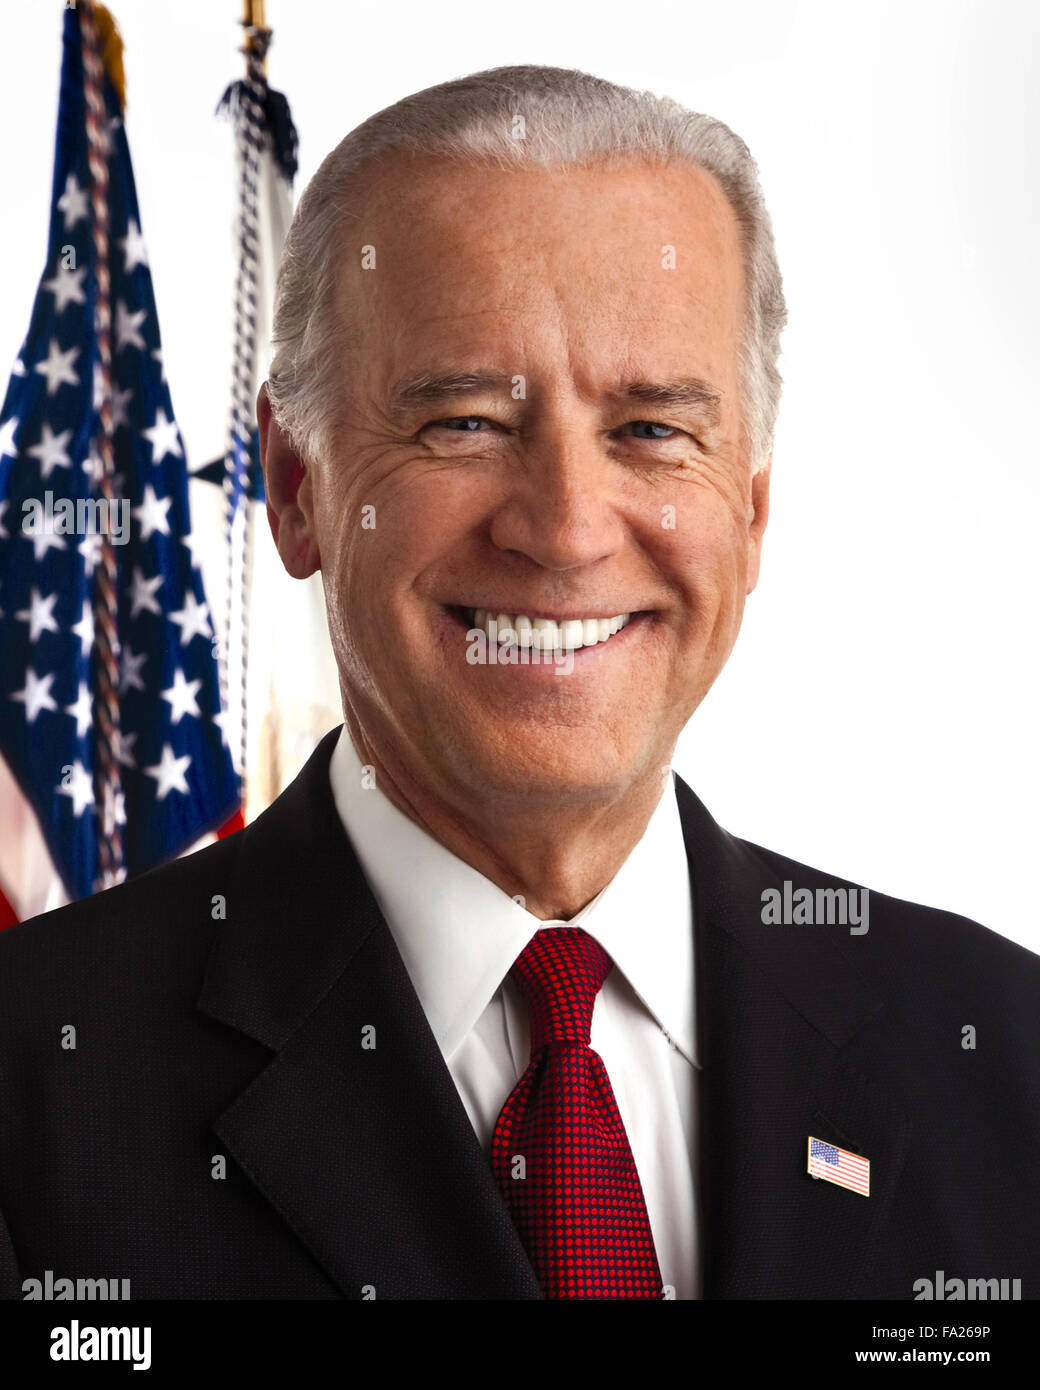 Joseph Robinette "Joe" Biden Jr. americano que es el 47º Vicepresidente de los Estados Unidos. Sólo para uso editorial Foto de stock